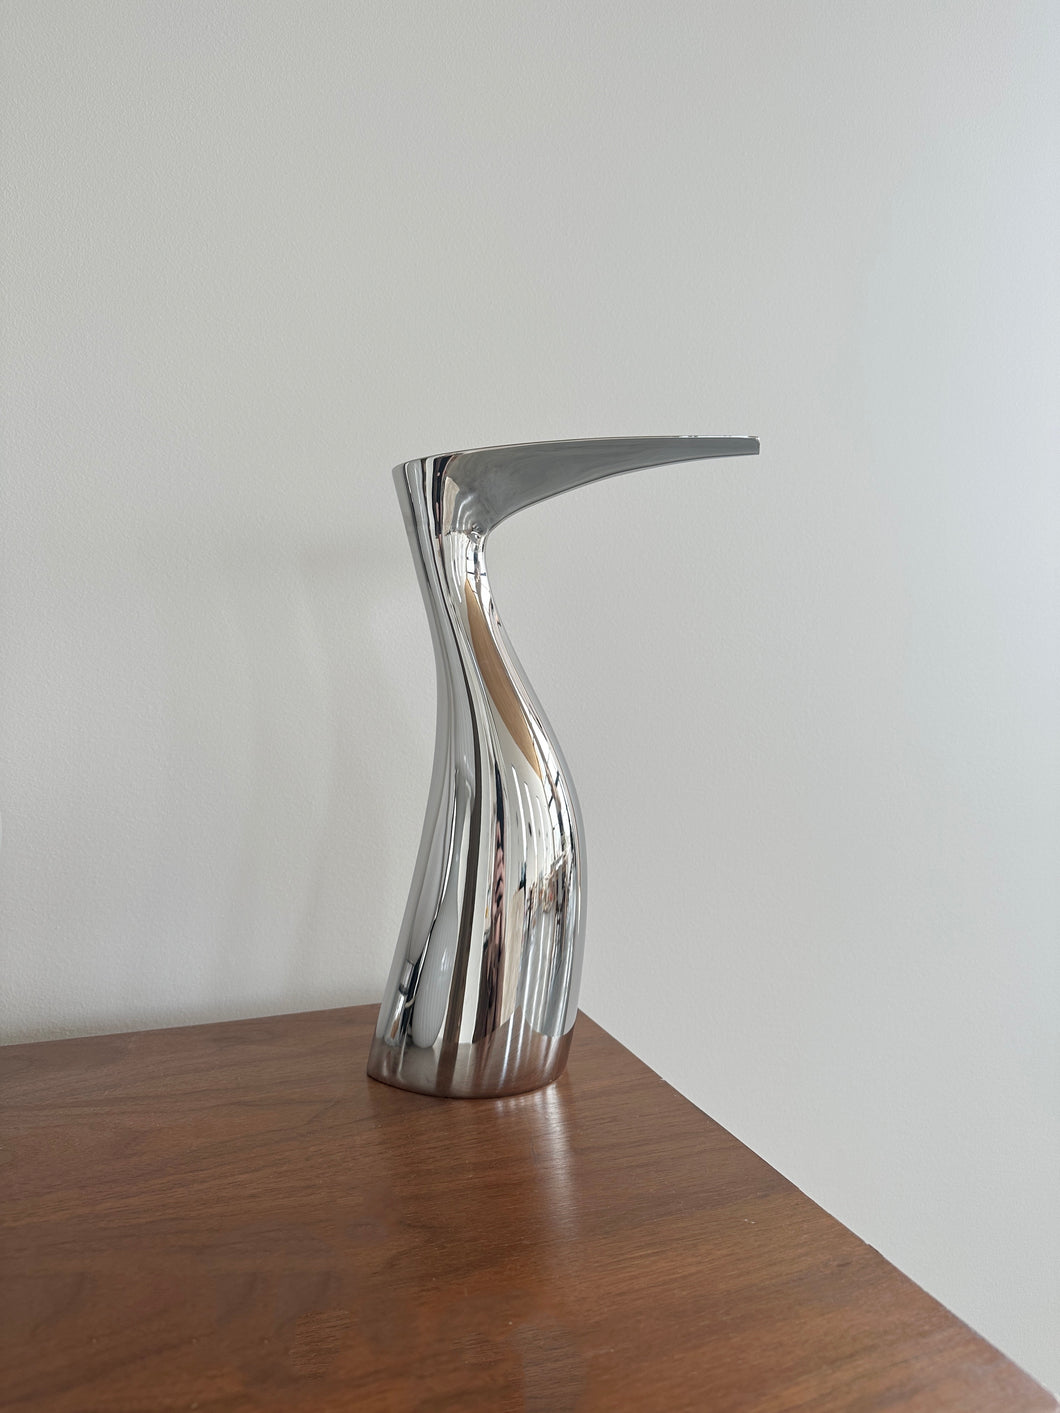 'Ibis Ibis' pitcher/vase by Allan Scharff for Georg Jensen